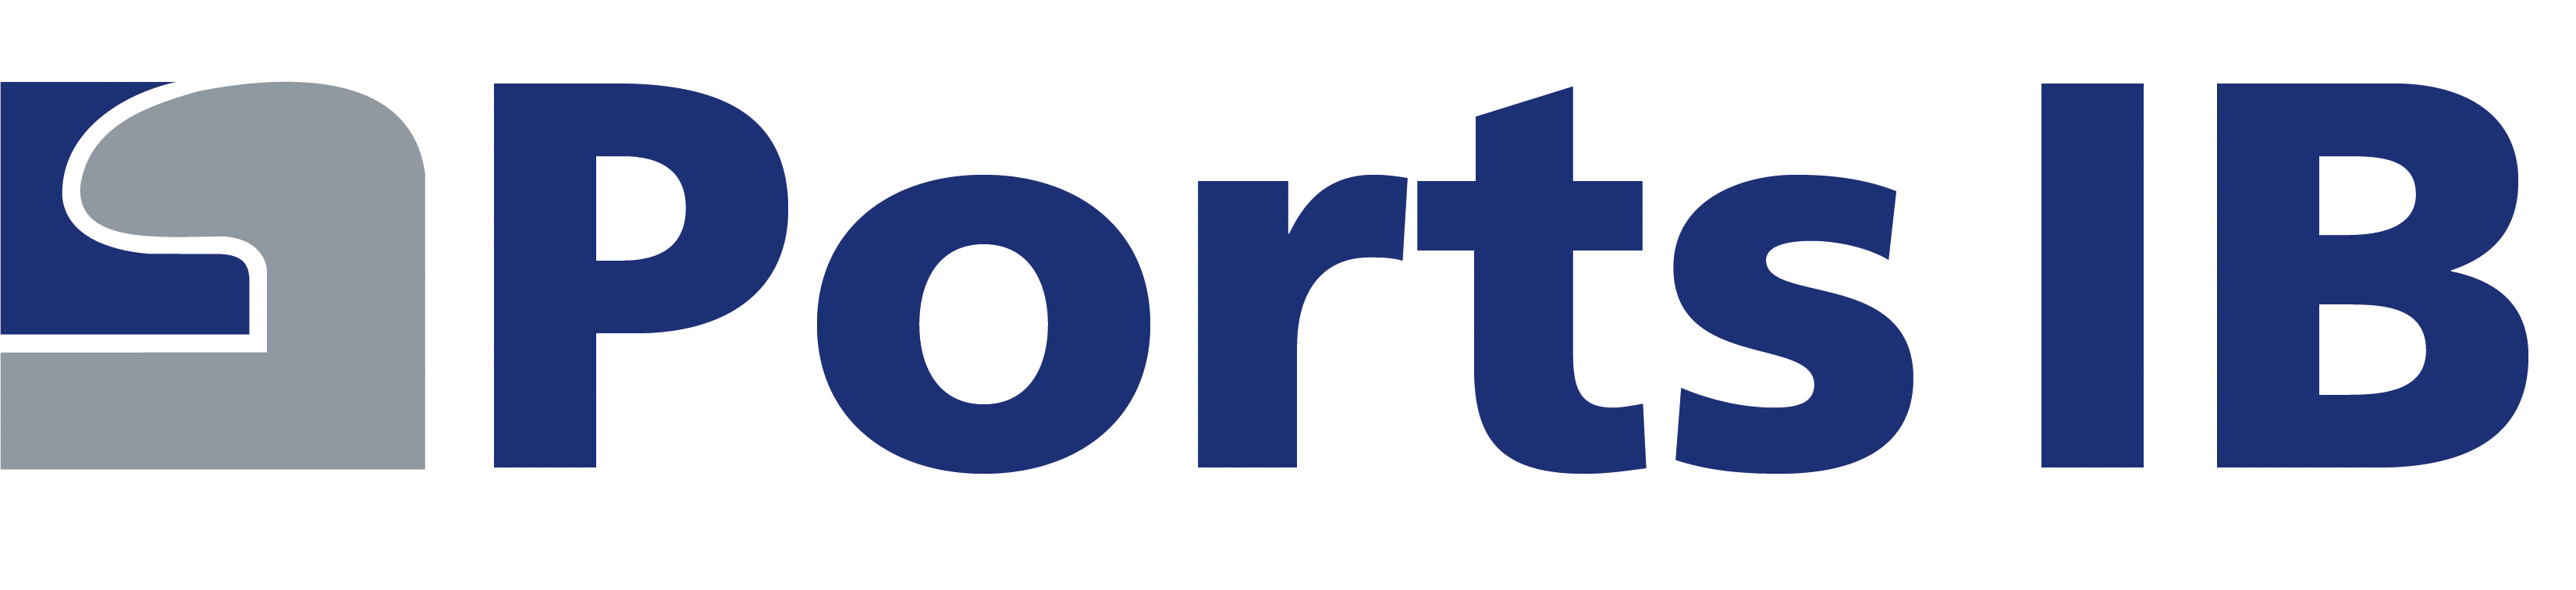 portsib logo